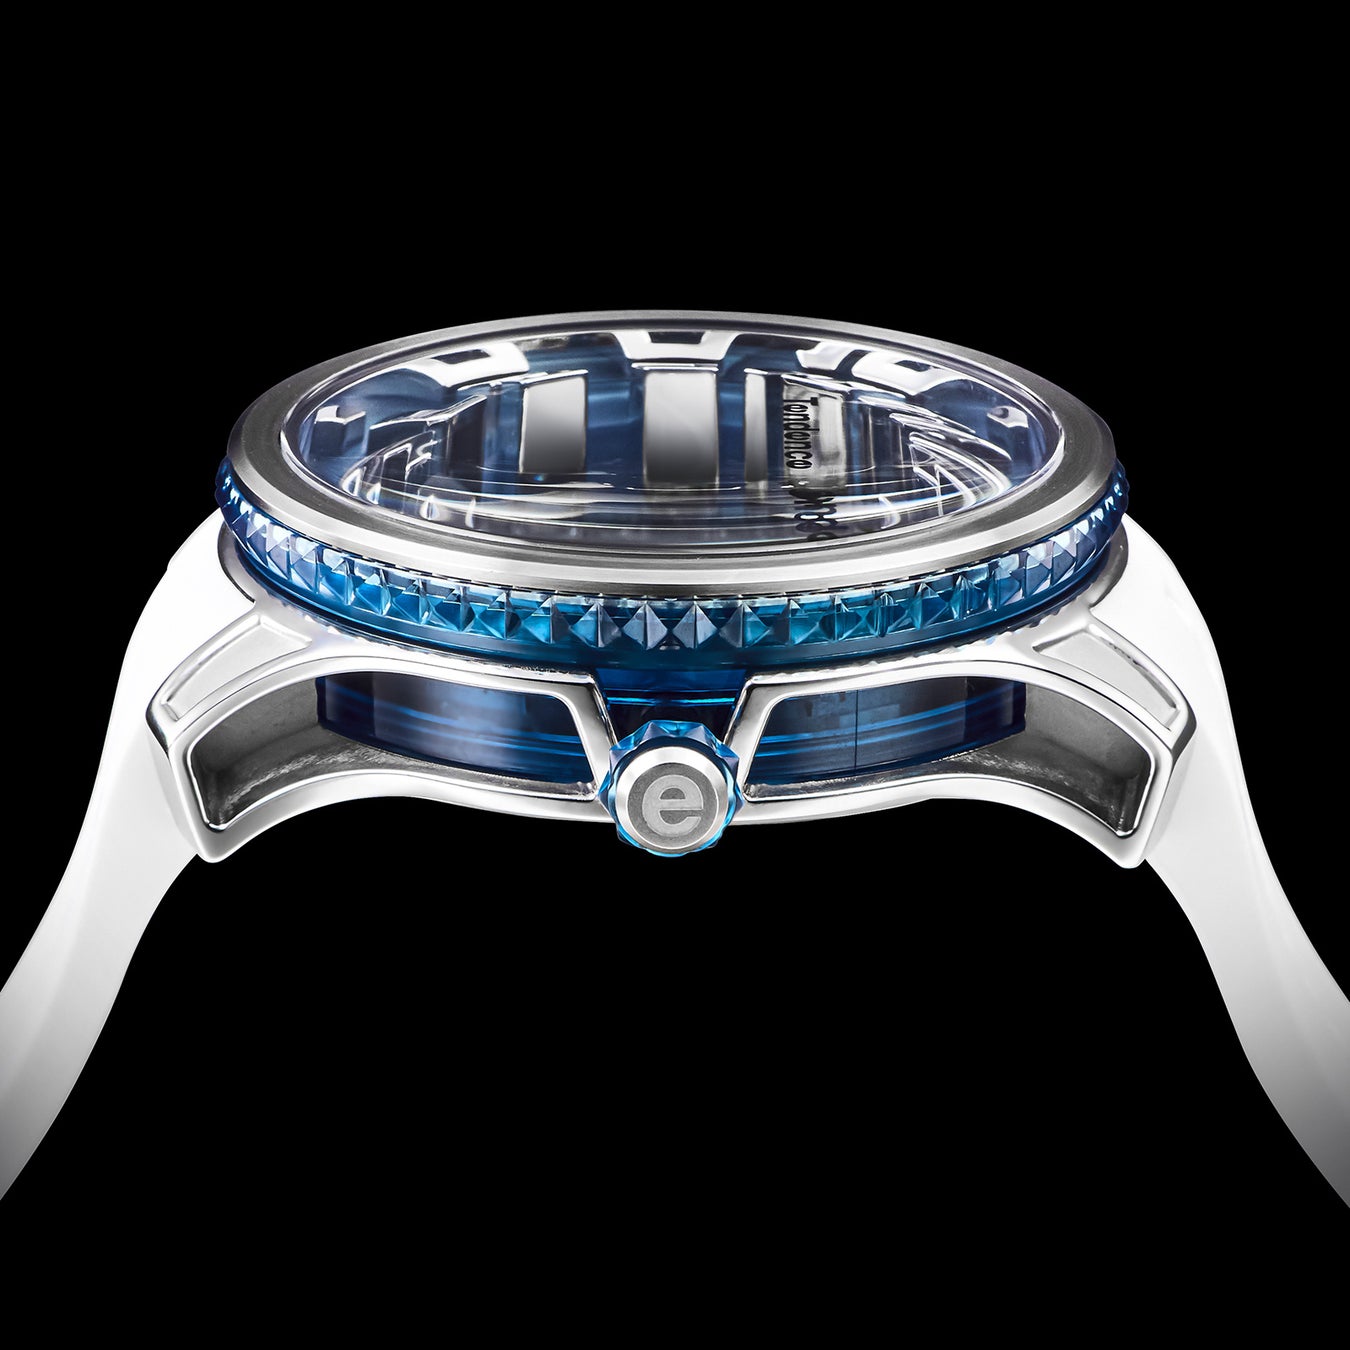 スイス生まれの腕時計ブランド「Tendence（テンデンス）」はブランド初となるケース交換が可能な新型オートマ...